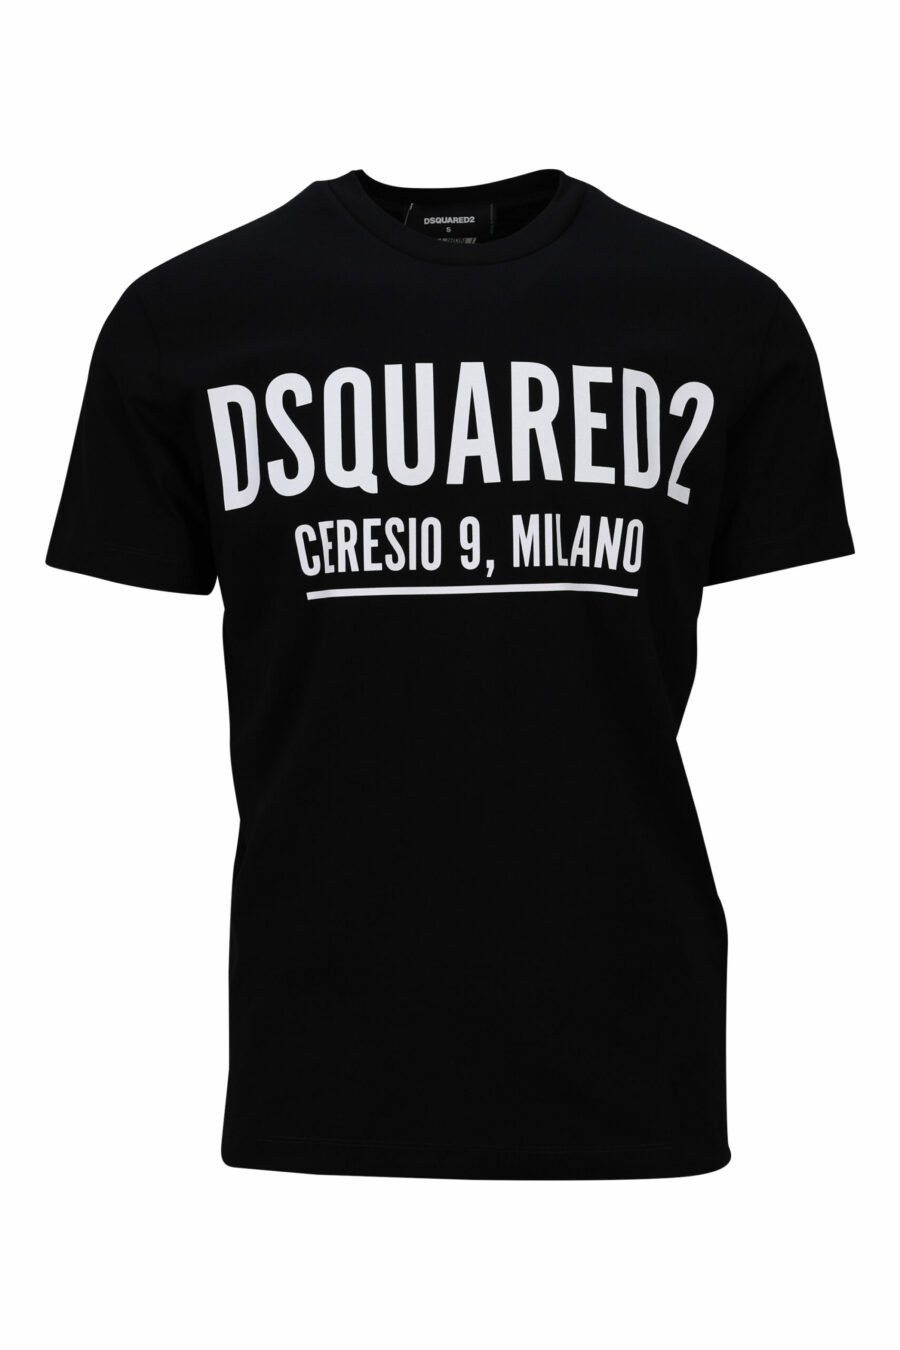 Camiseta negra con maxilogo "ceresio 9 milano" - 8054148504984 scaled